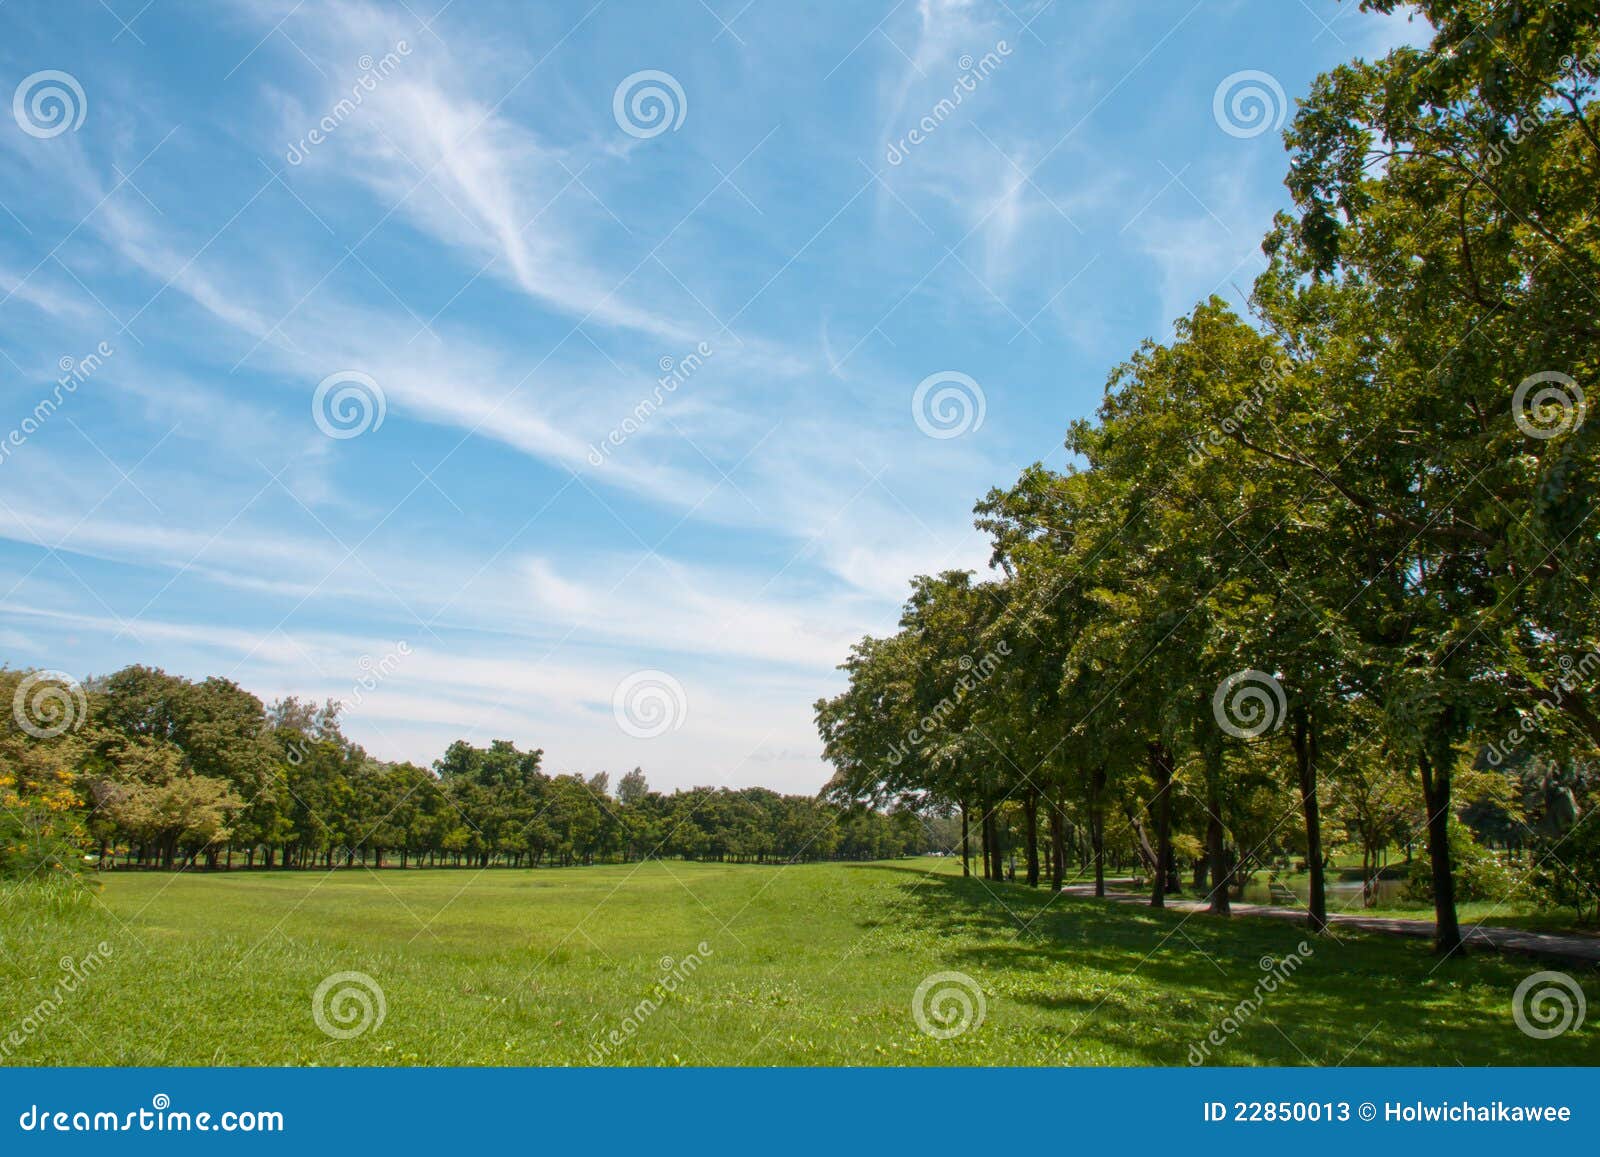 Landscaped park stock image. Image of road, landscaped - 22850013